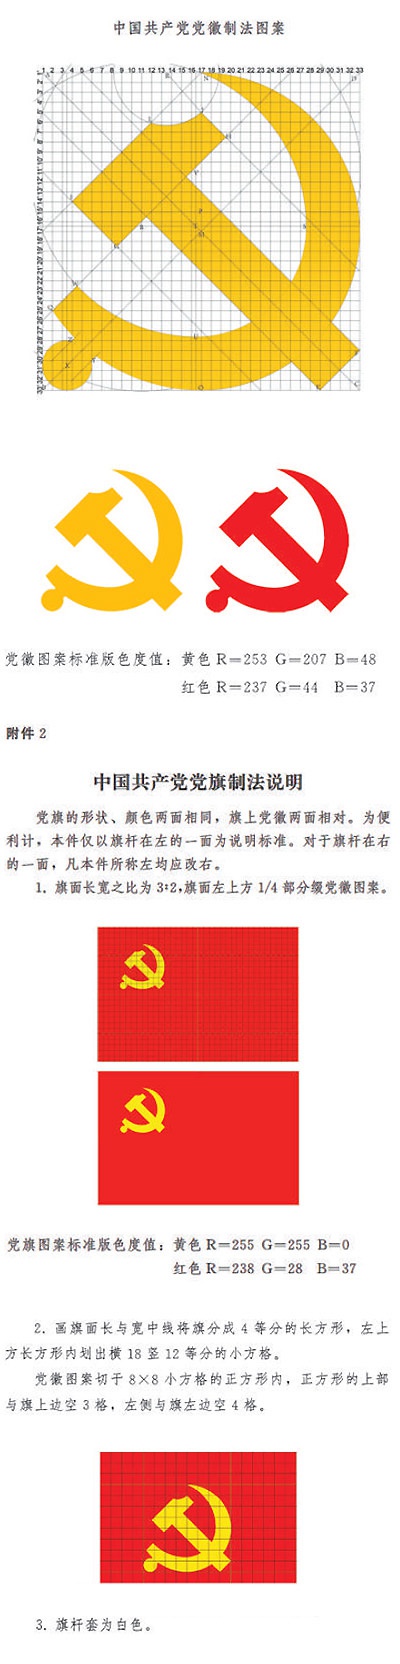 中共中央印发中国共产党党徽党旗条例